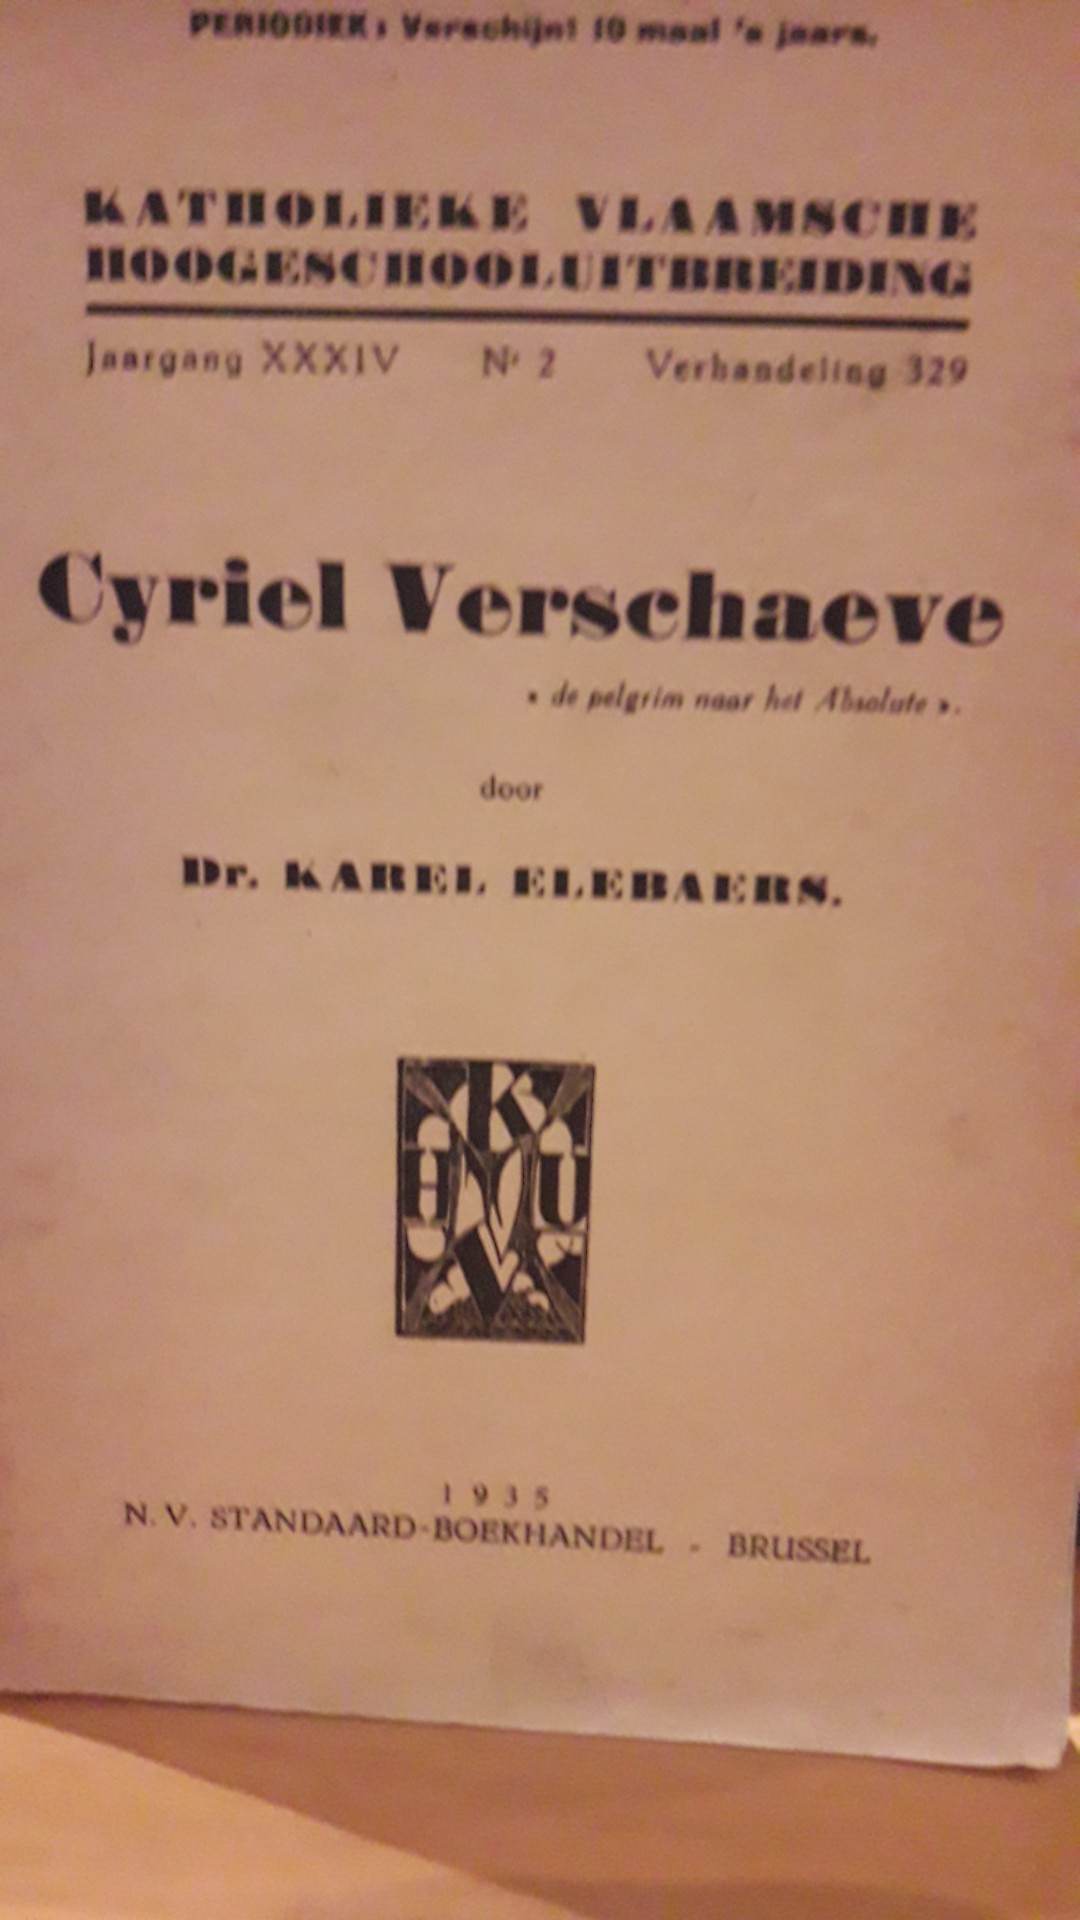 Cyriel Verschaeve - door Karel Elebaers - uitgave 1935 / 50 blz